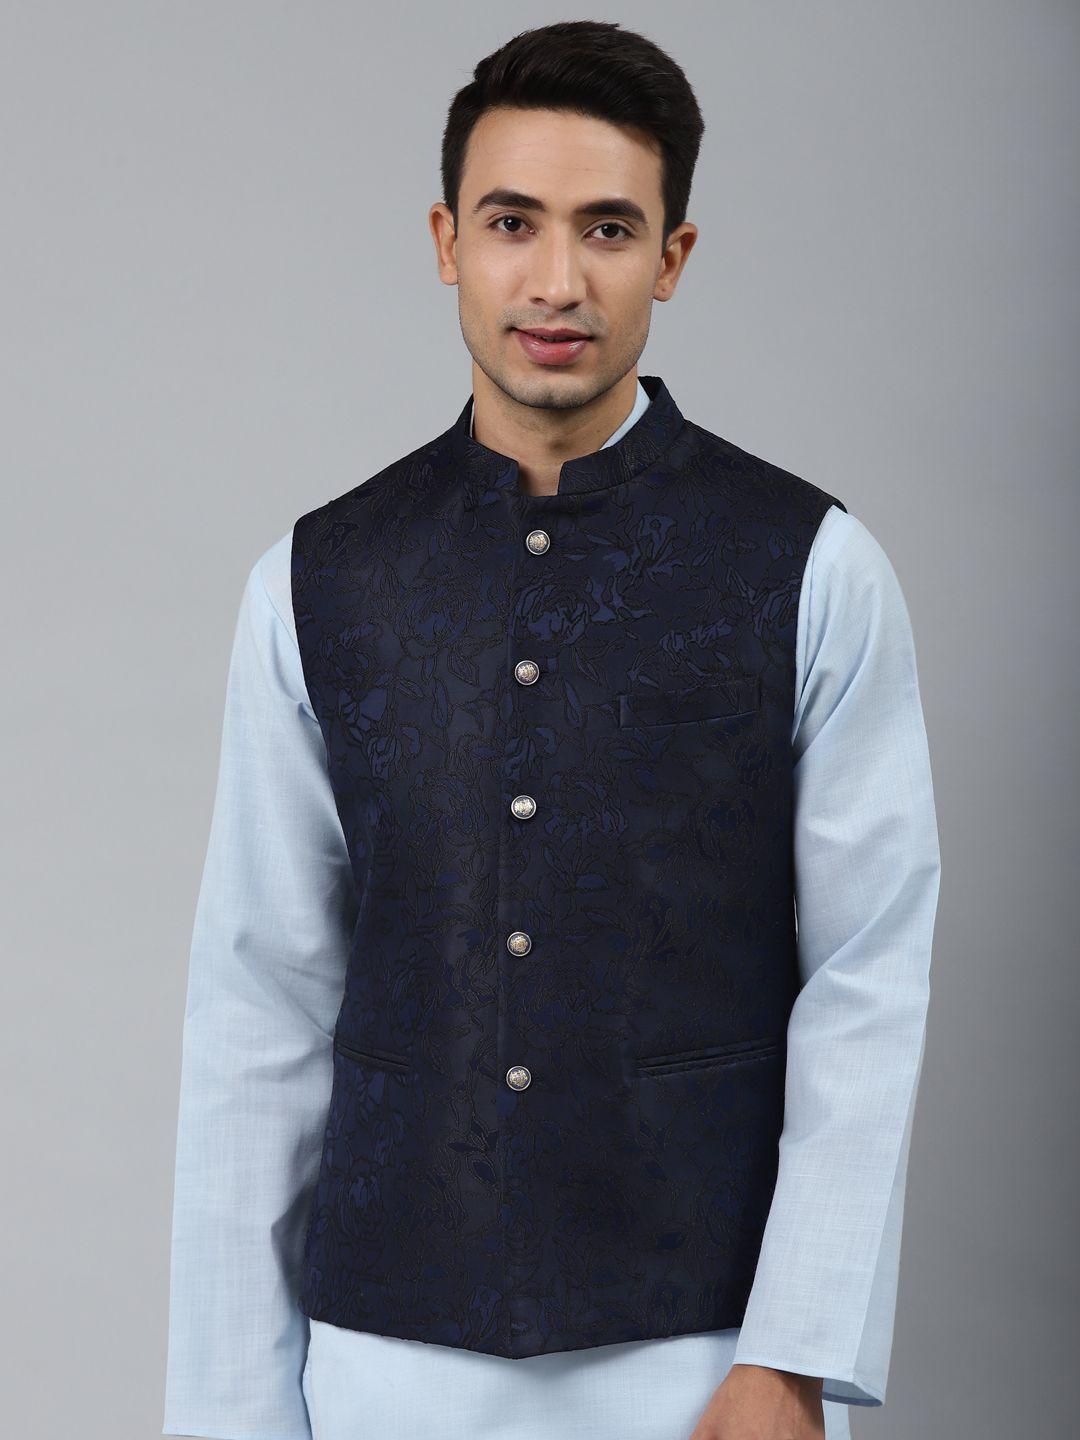 manq-men-blue-woven-jaquard-silk-nehru-jacket